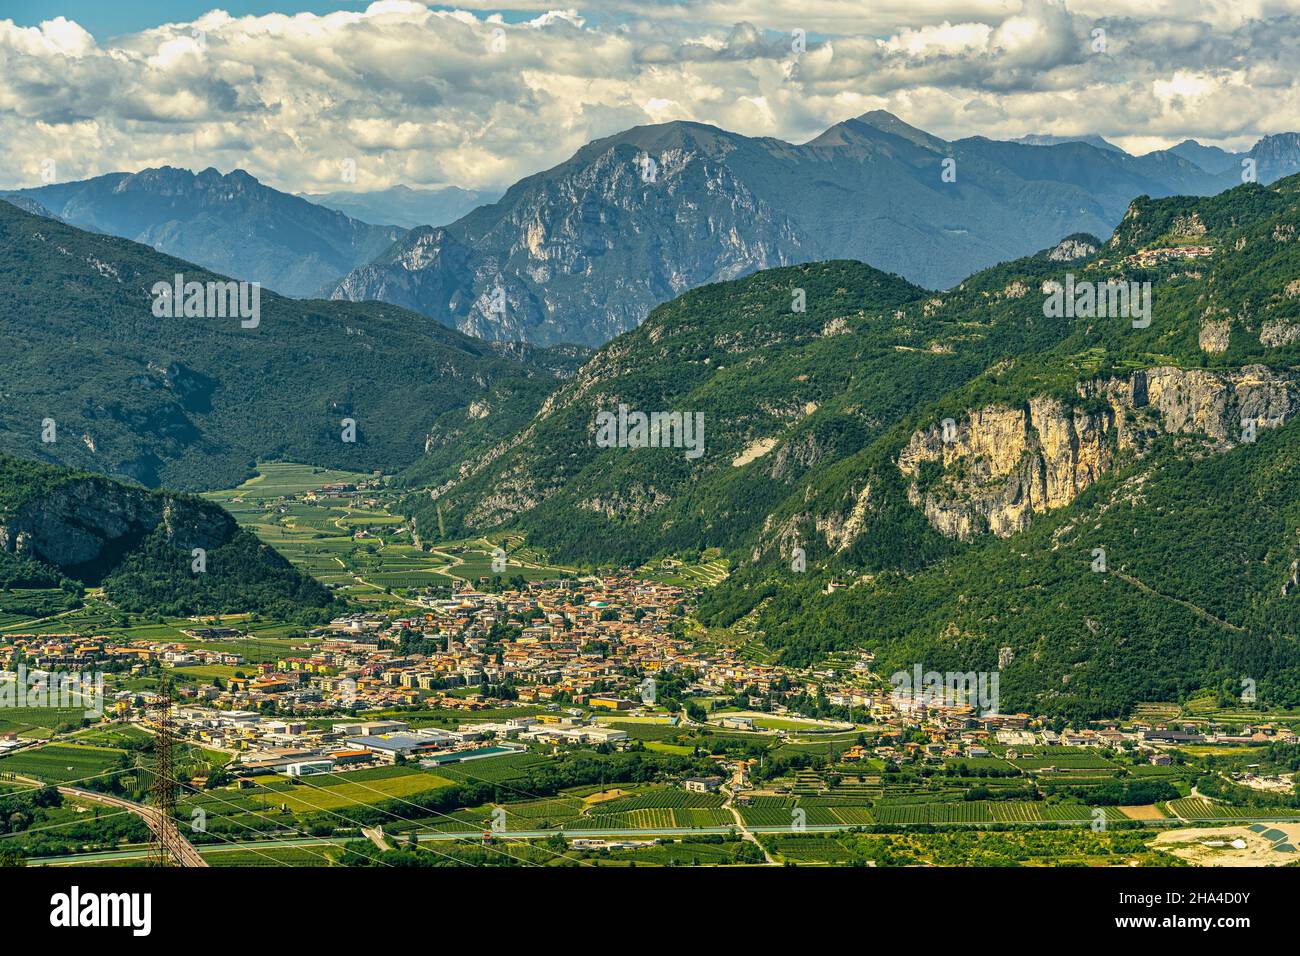 La commune de Mori occupe la partie sud de Vallagarina, la dernière étendue dans les montagnes de la vallée traversée par la rivière Adige.Mori Banque D'Images